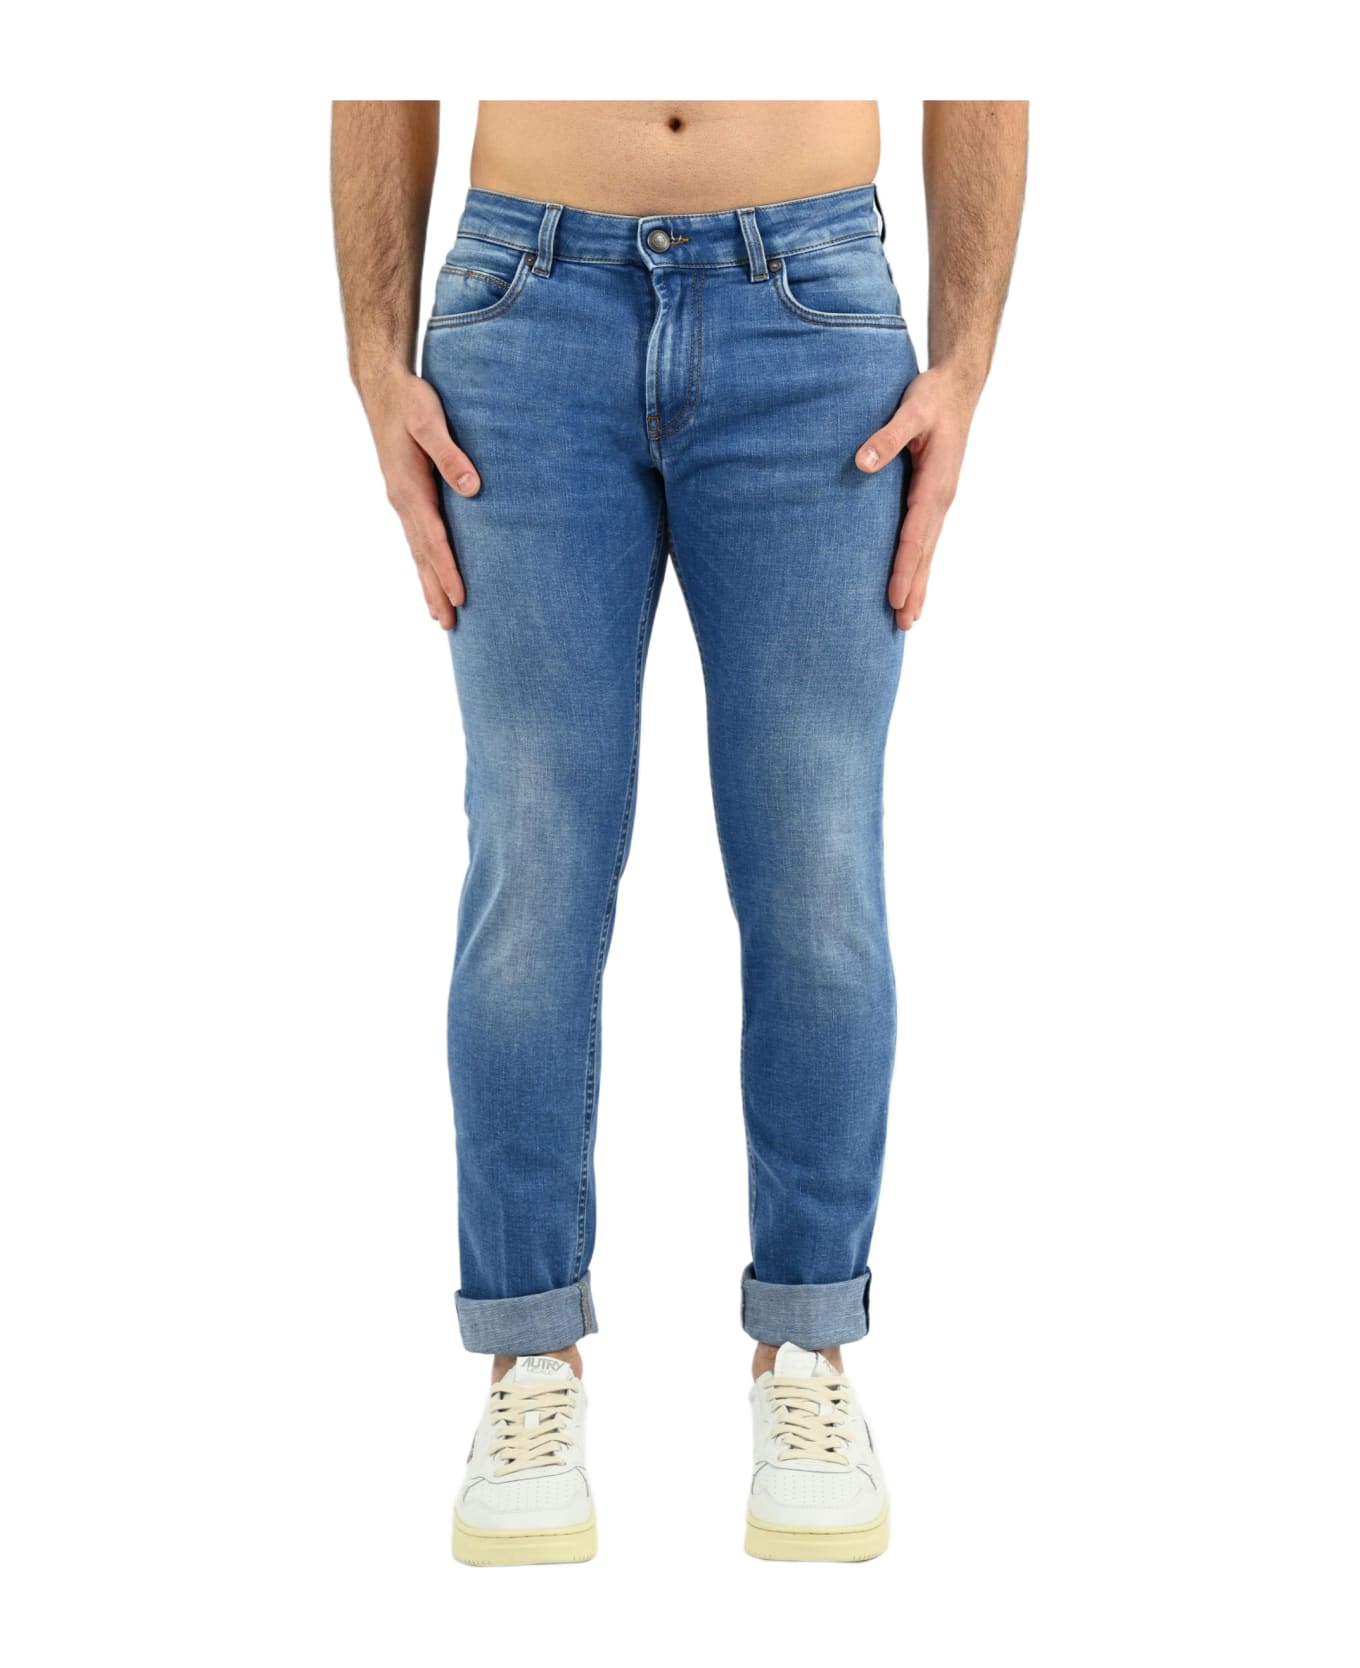 Fay 5-pocket Jeans - Turchese Chiaro